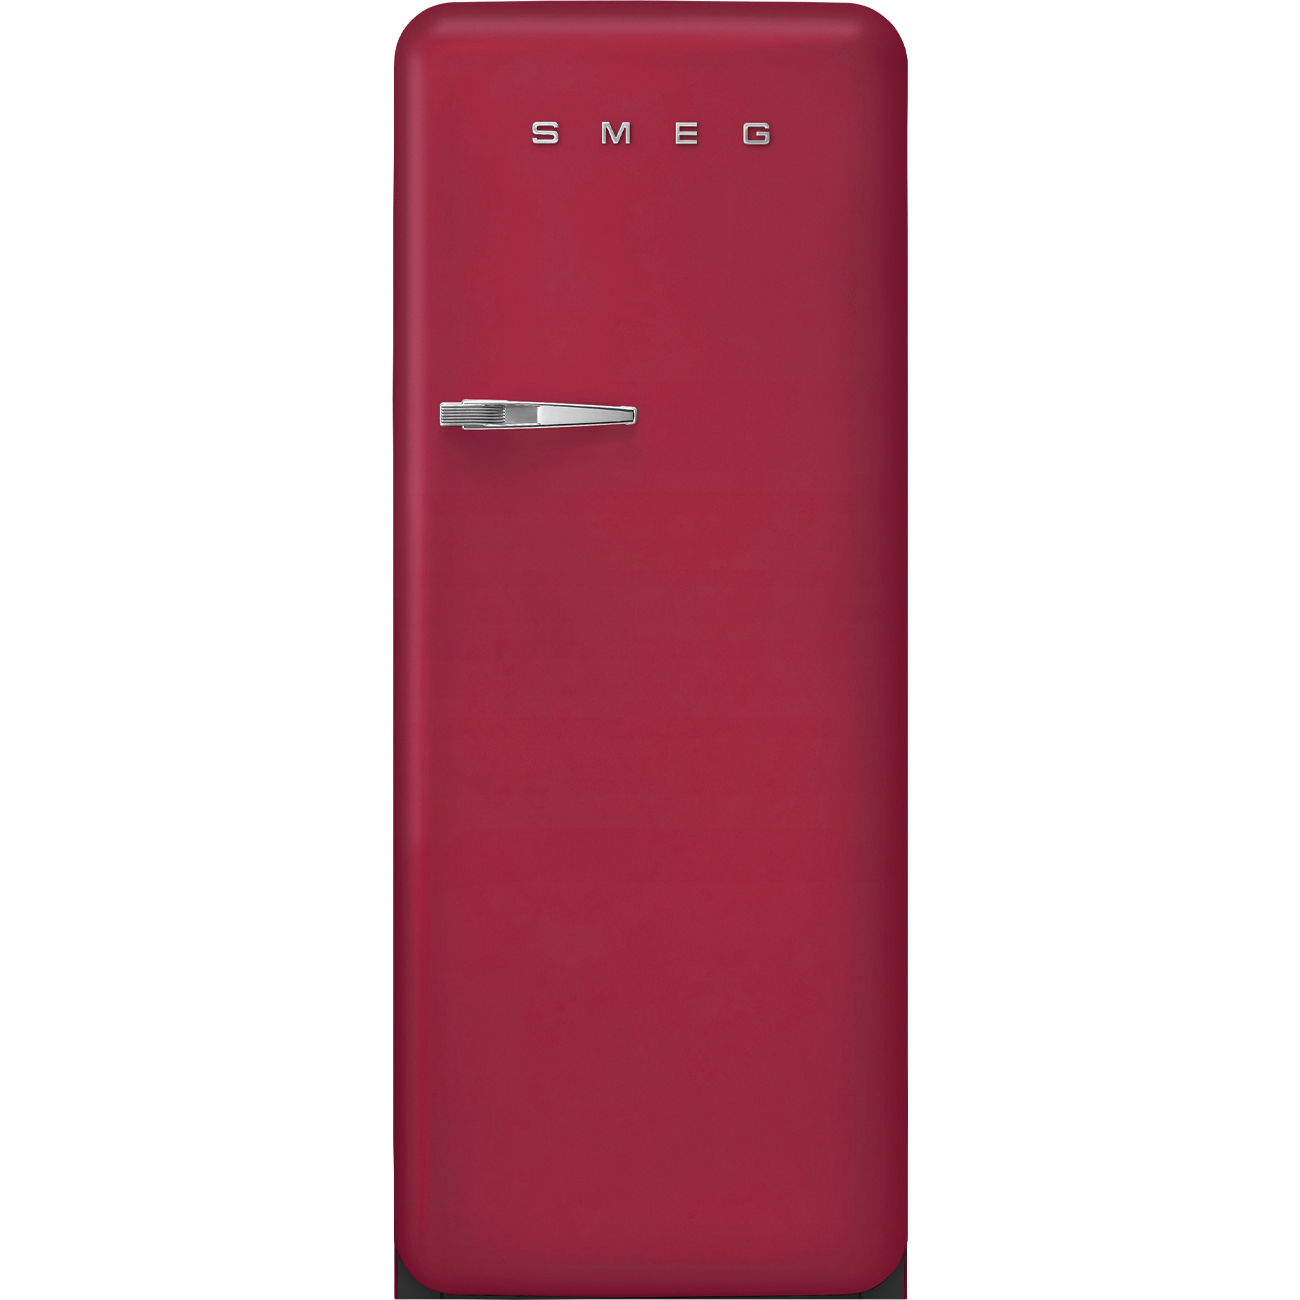 Ruby Red Retro-Kühlschränke von Smeg_1